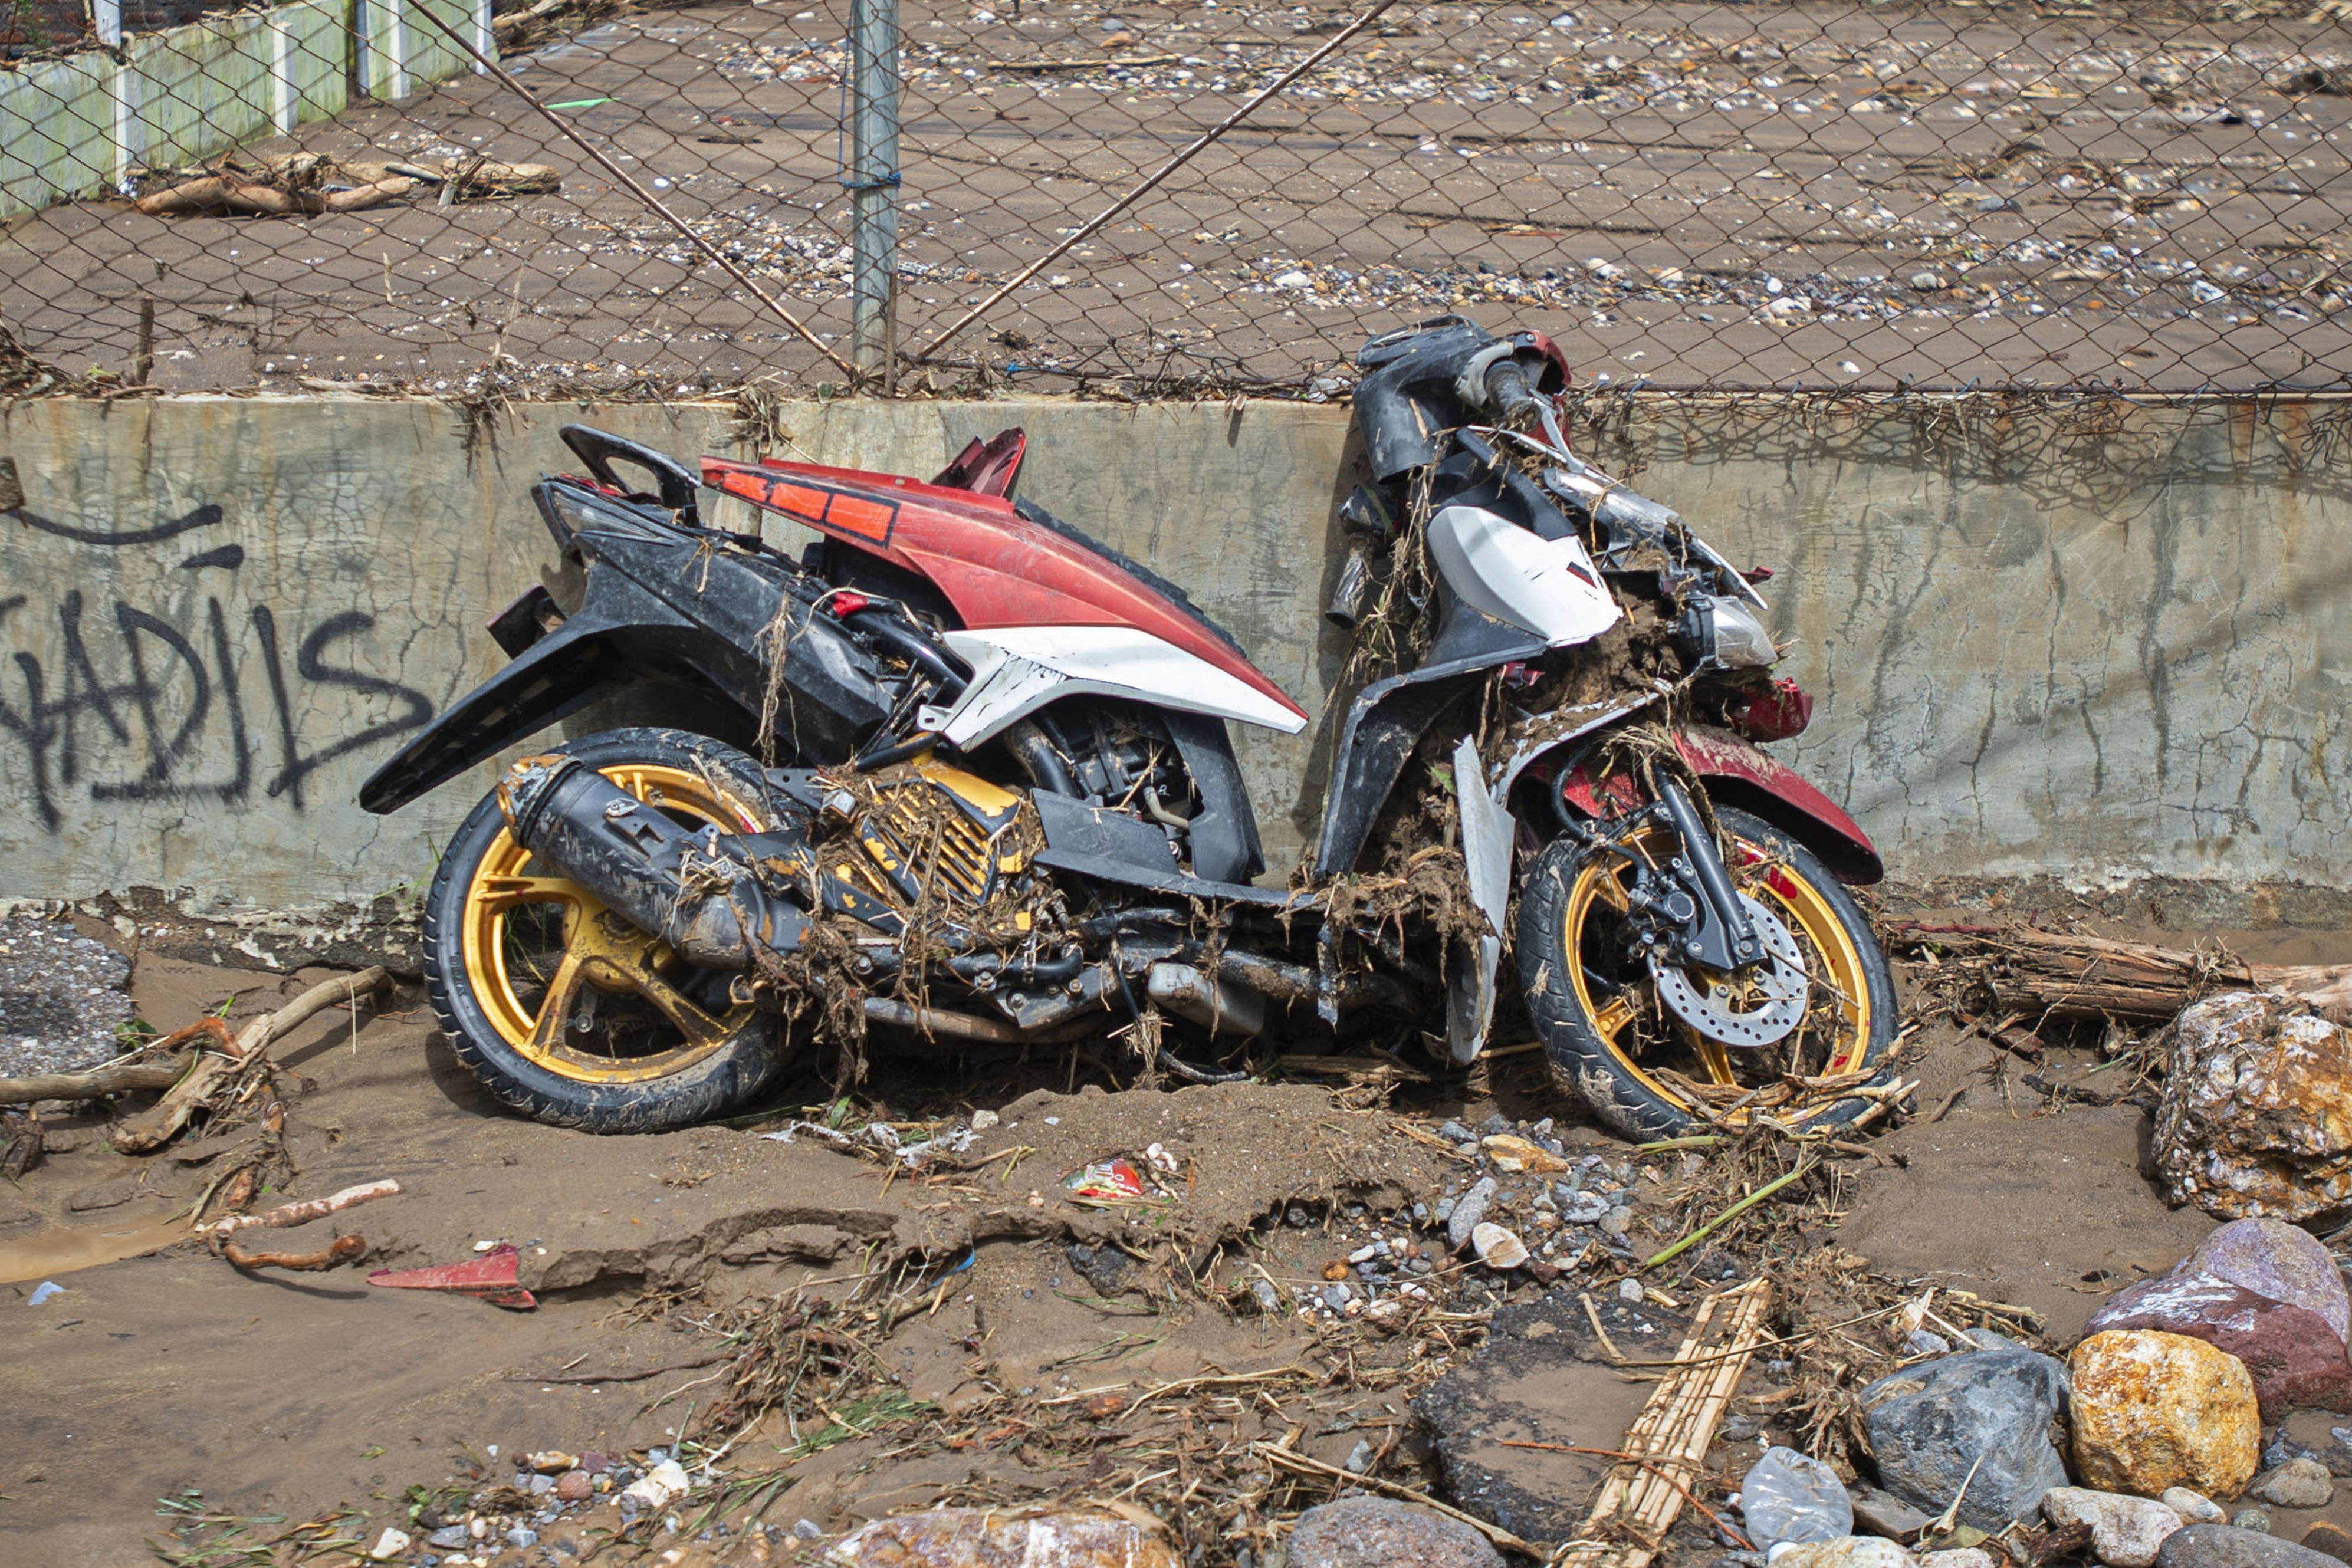 Sebuah sepeda motor rusak terdampar di antara puing-puing permukiman yang hancur akibat banjir bandang di Weiwerang, Adonara Timur, Kabupaten Flores Timur, Nusa Tenggara Timur (NTT).